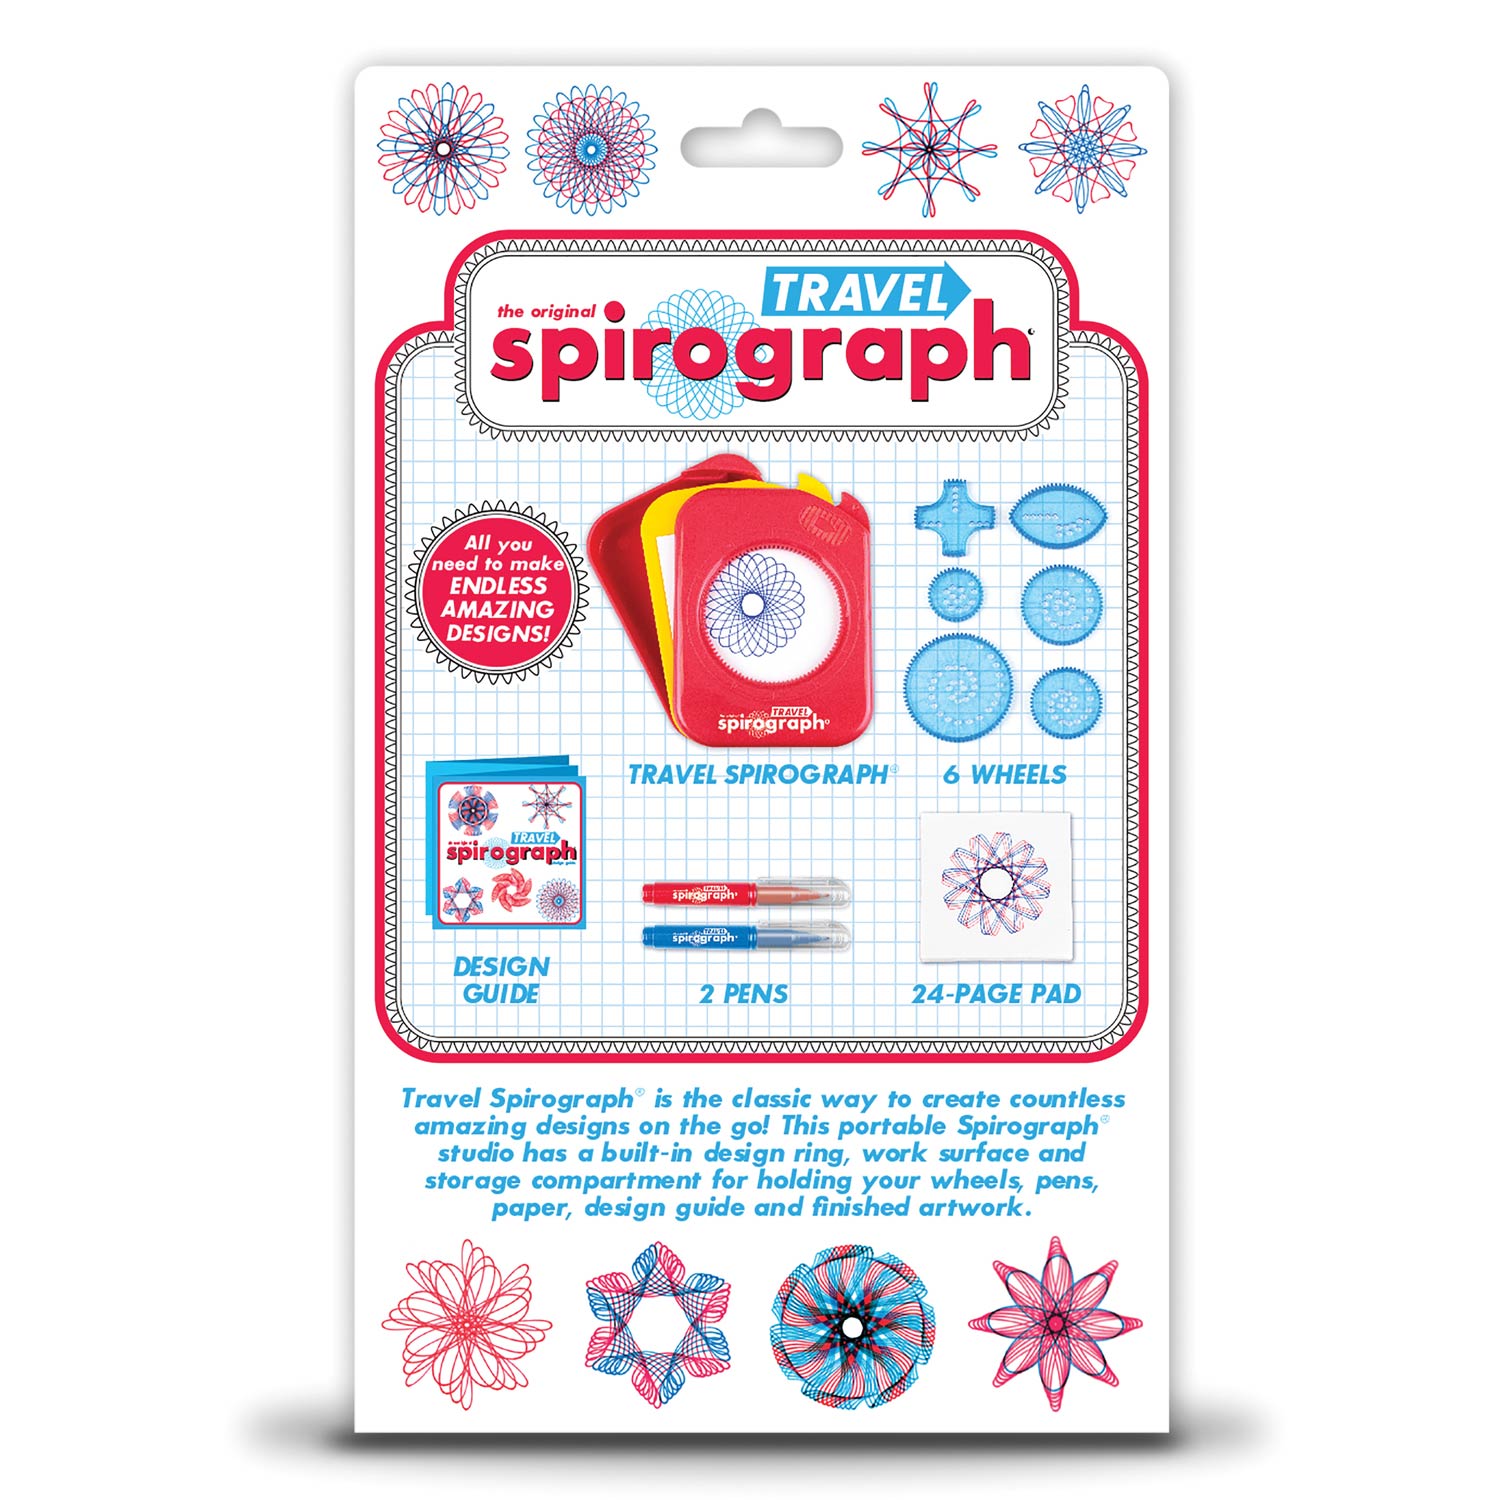 Spirograph - Reiseset